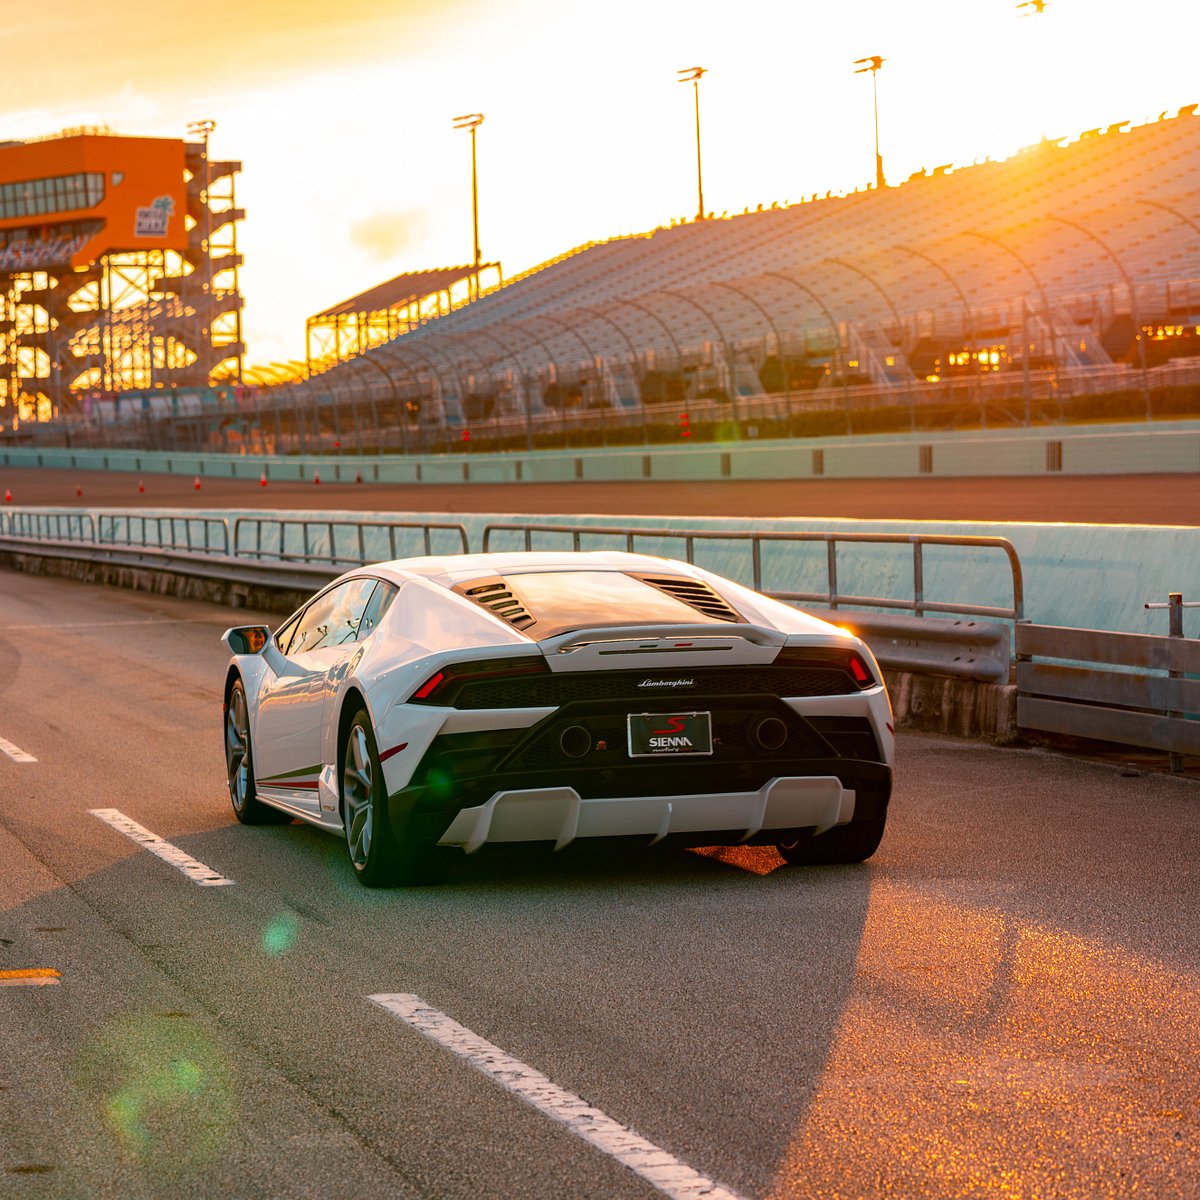 Miami Exotic Auto Racing - 2023 Qué saber antes de ir - Lo más comentado  por la gente - Tripadvisor